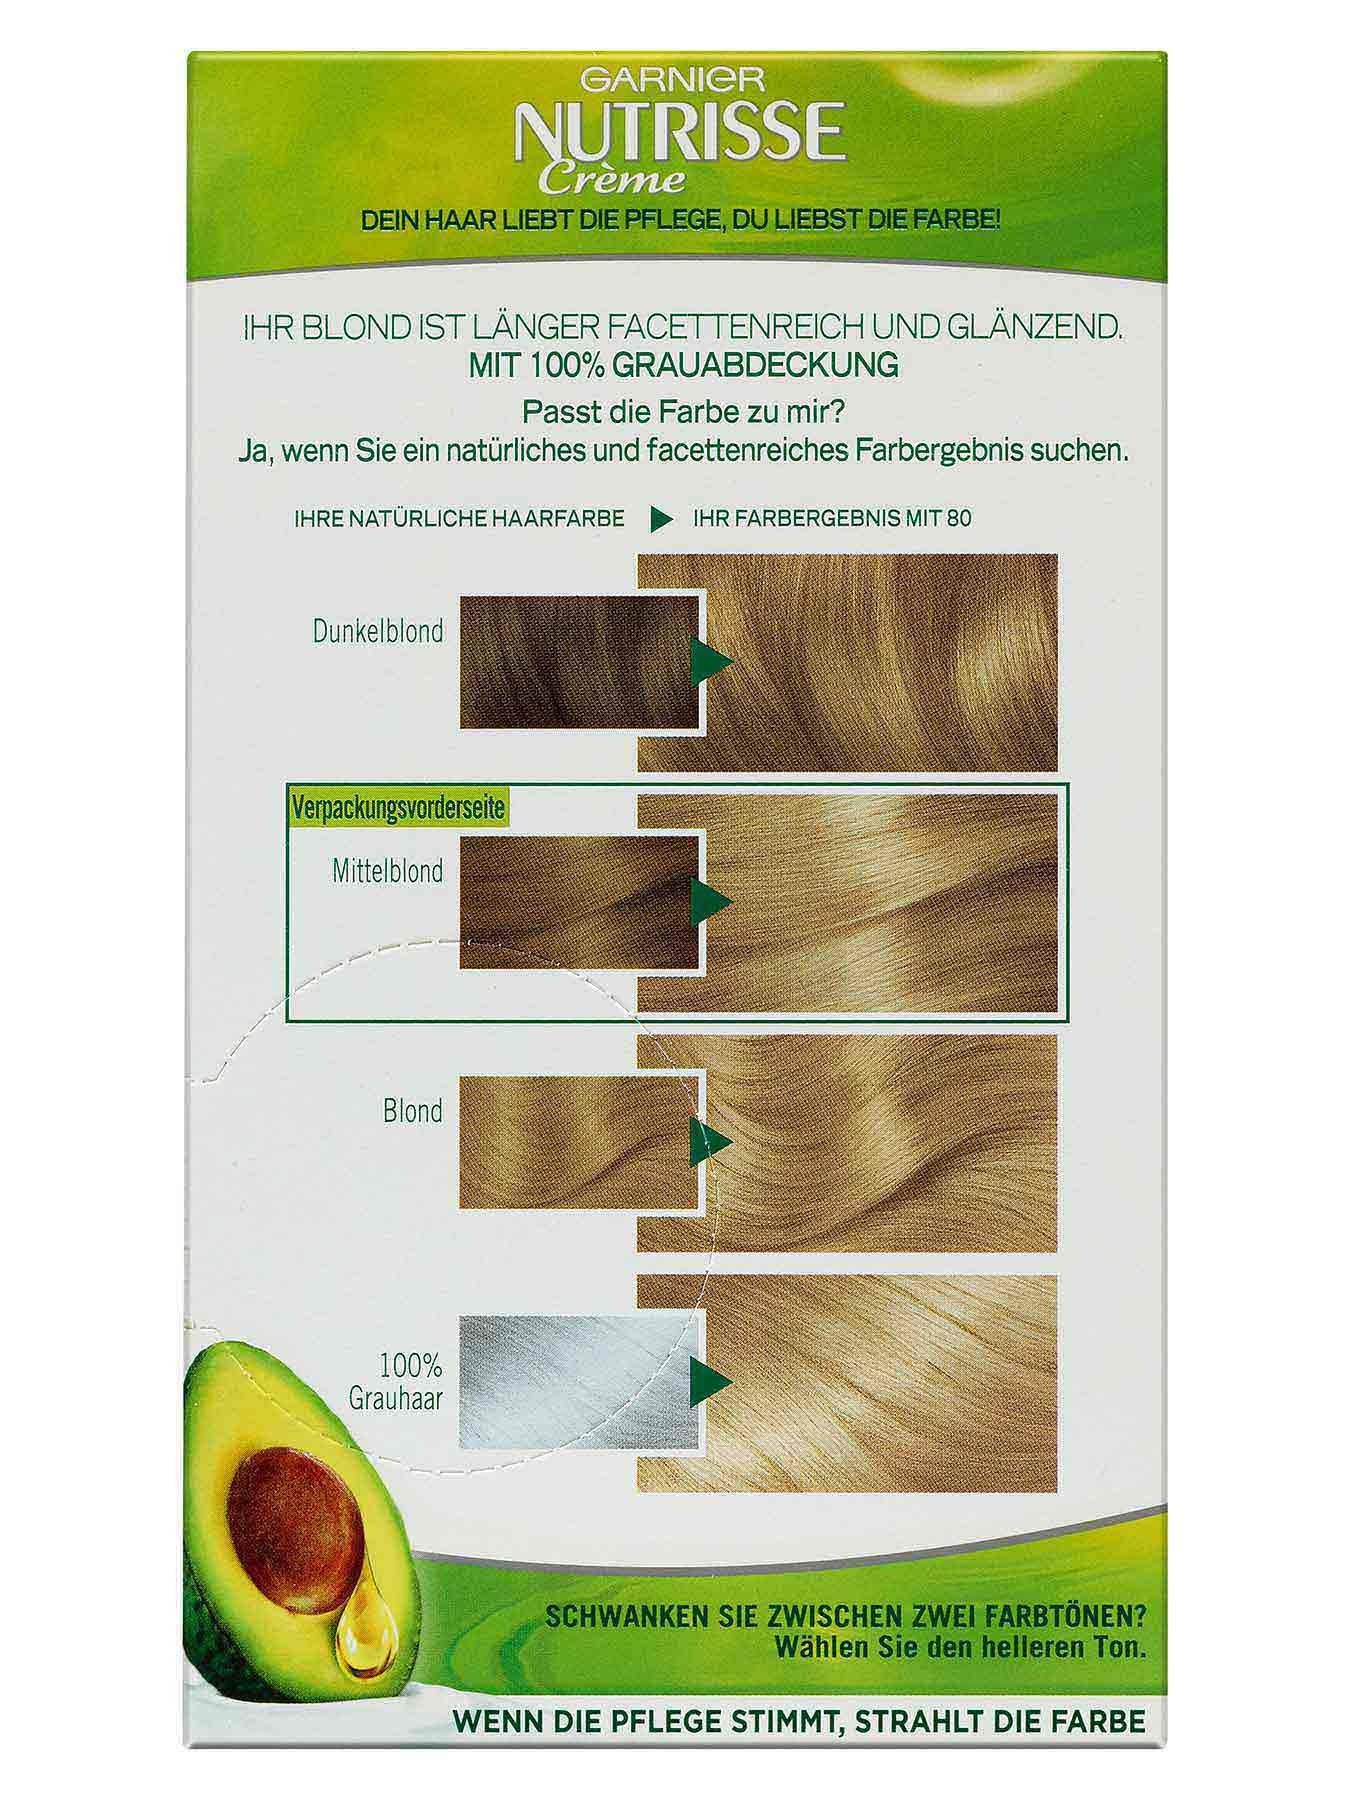 80-Vanilla-Blond-Dauerhafte-Pflege-Haarfarbe-Nutrisse-Creme-1Stk-Rueckseite-Garnier-Deutschland-gr